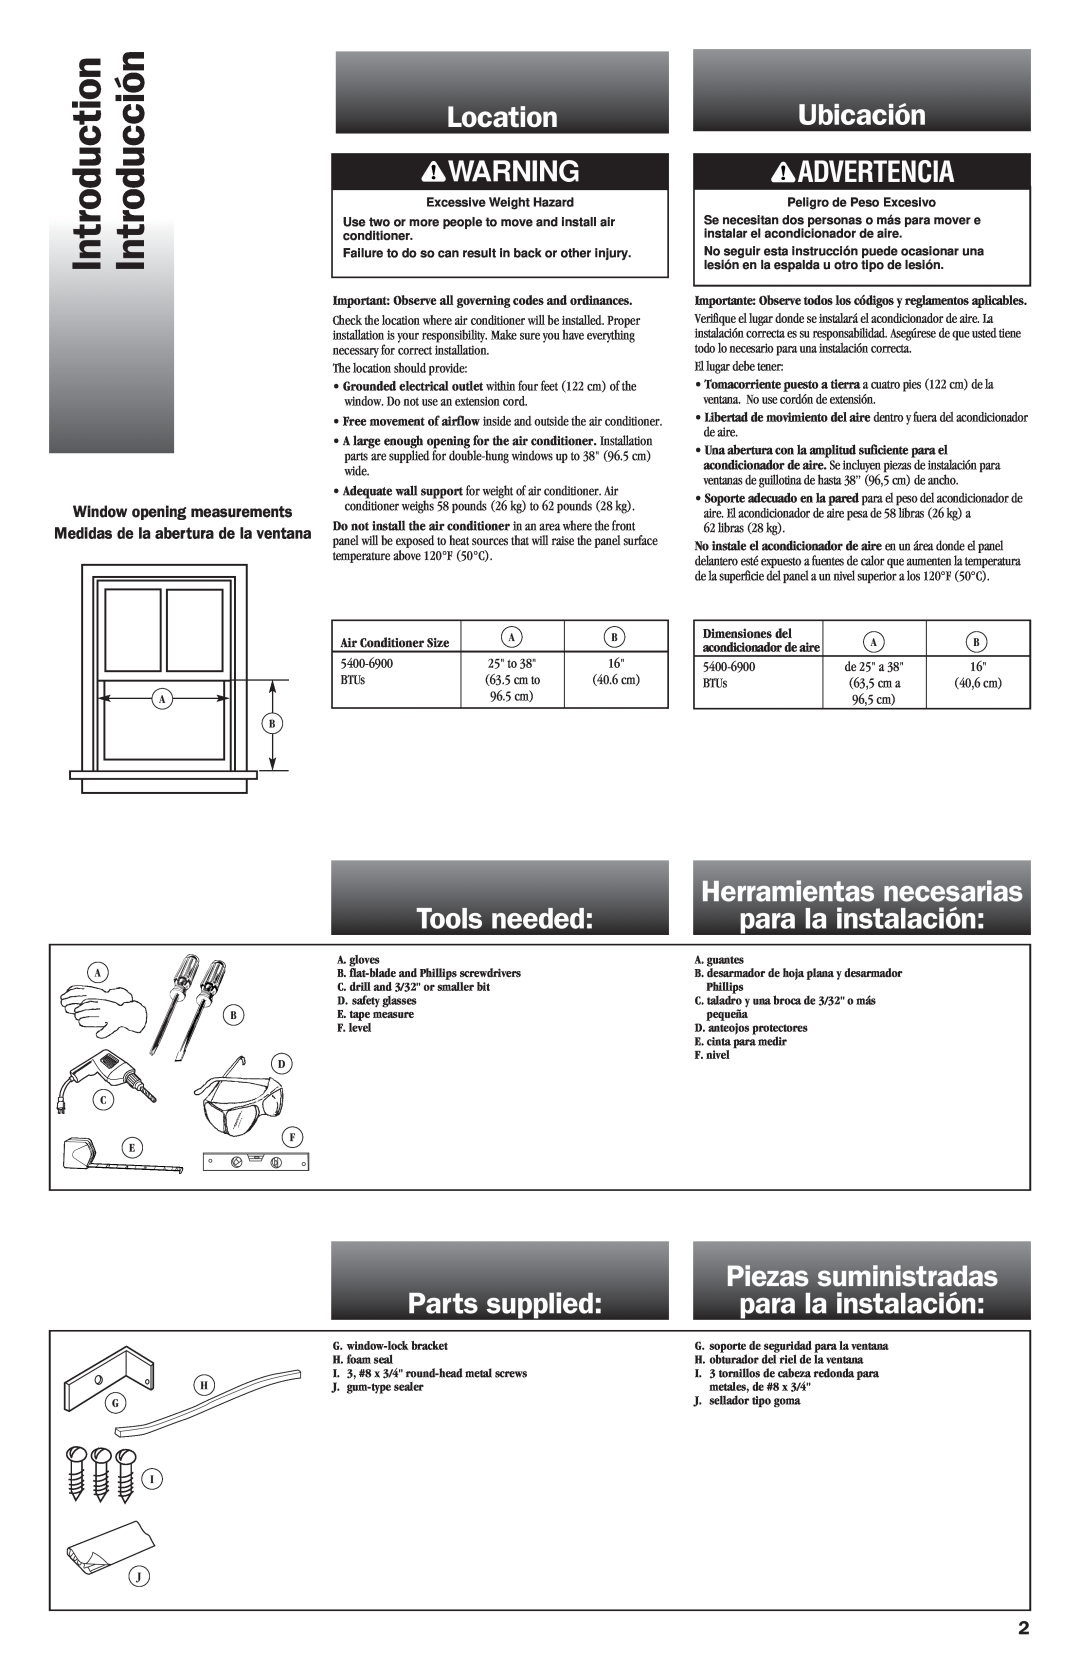 Whirlpool ACG052XJ0 manual Introduction, Introducción, Location, Ubicación, Tools needed, Parts supplied, Advertencia 